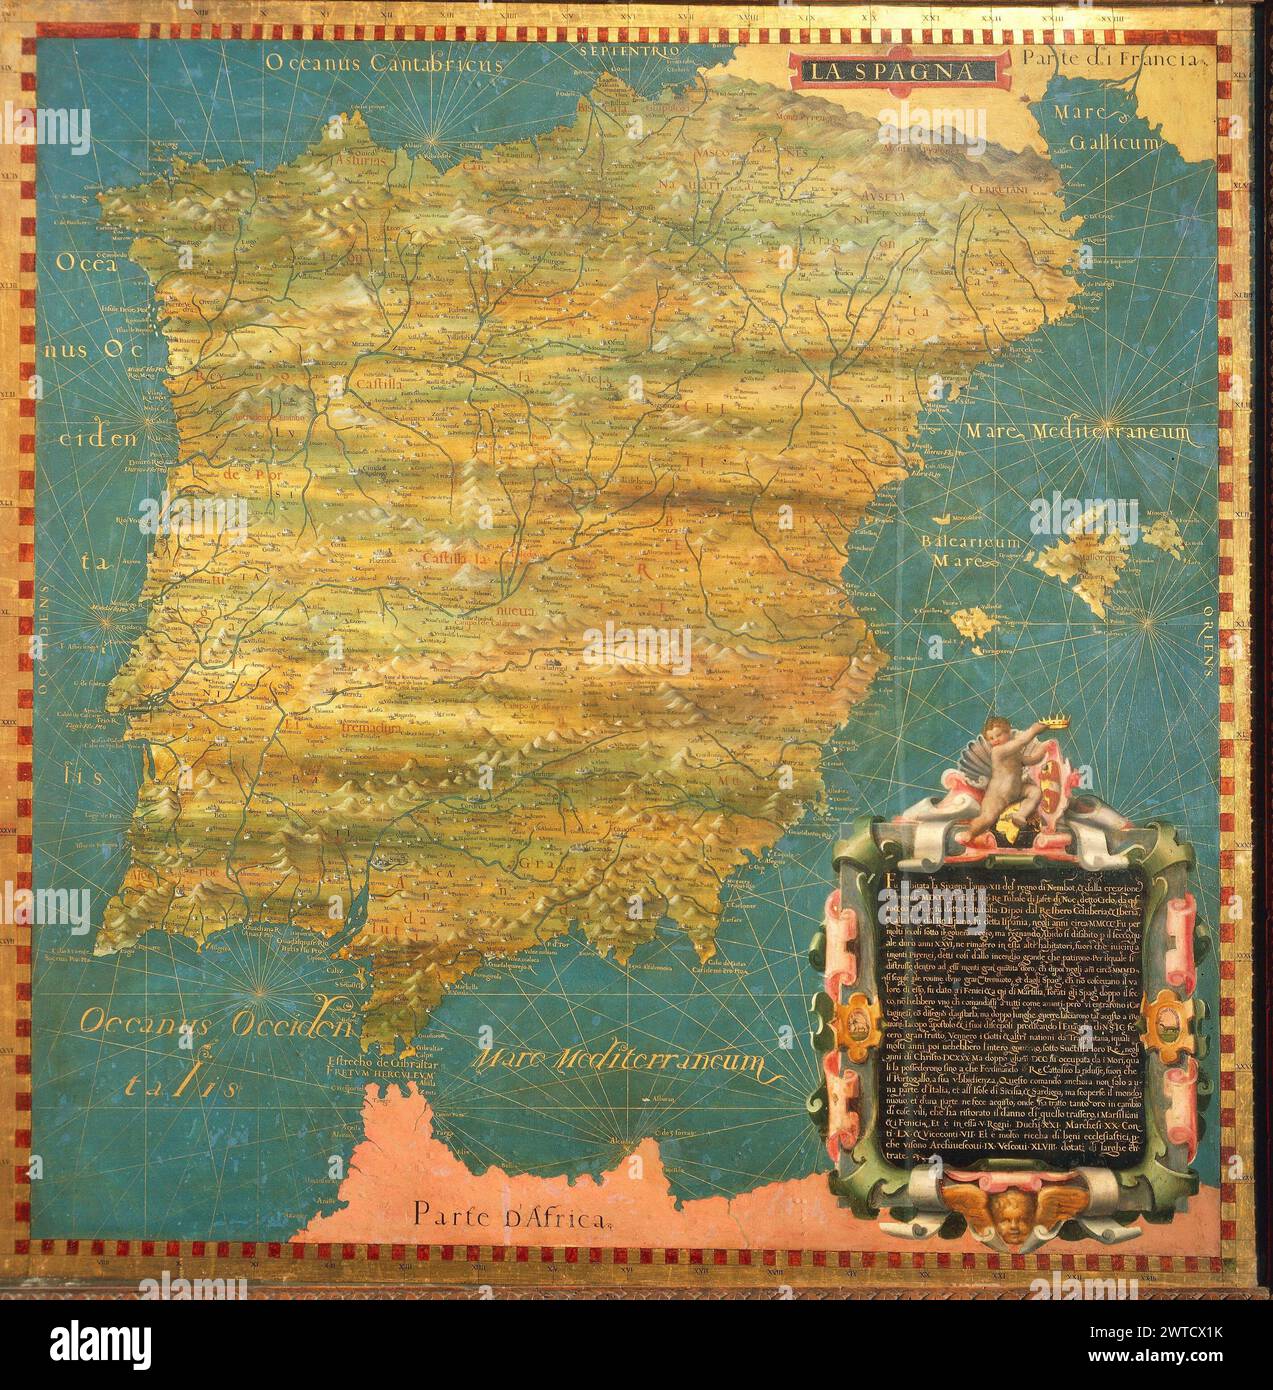 Mapa de la península ibérica - Salón de los Mapas Geográficos , Florencia Palazzo Vecchio, 1500 Mapas del mundo antiguo Foto de stock